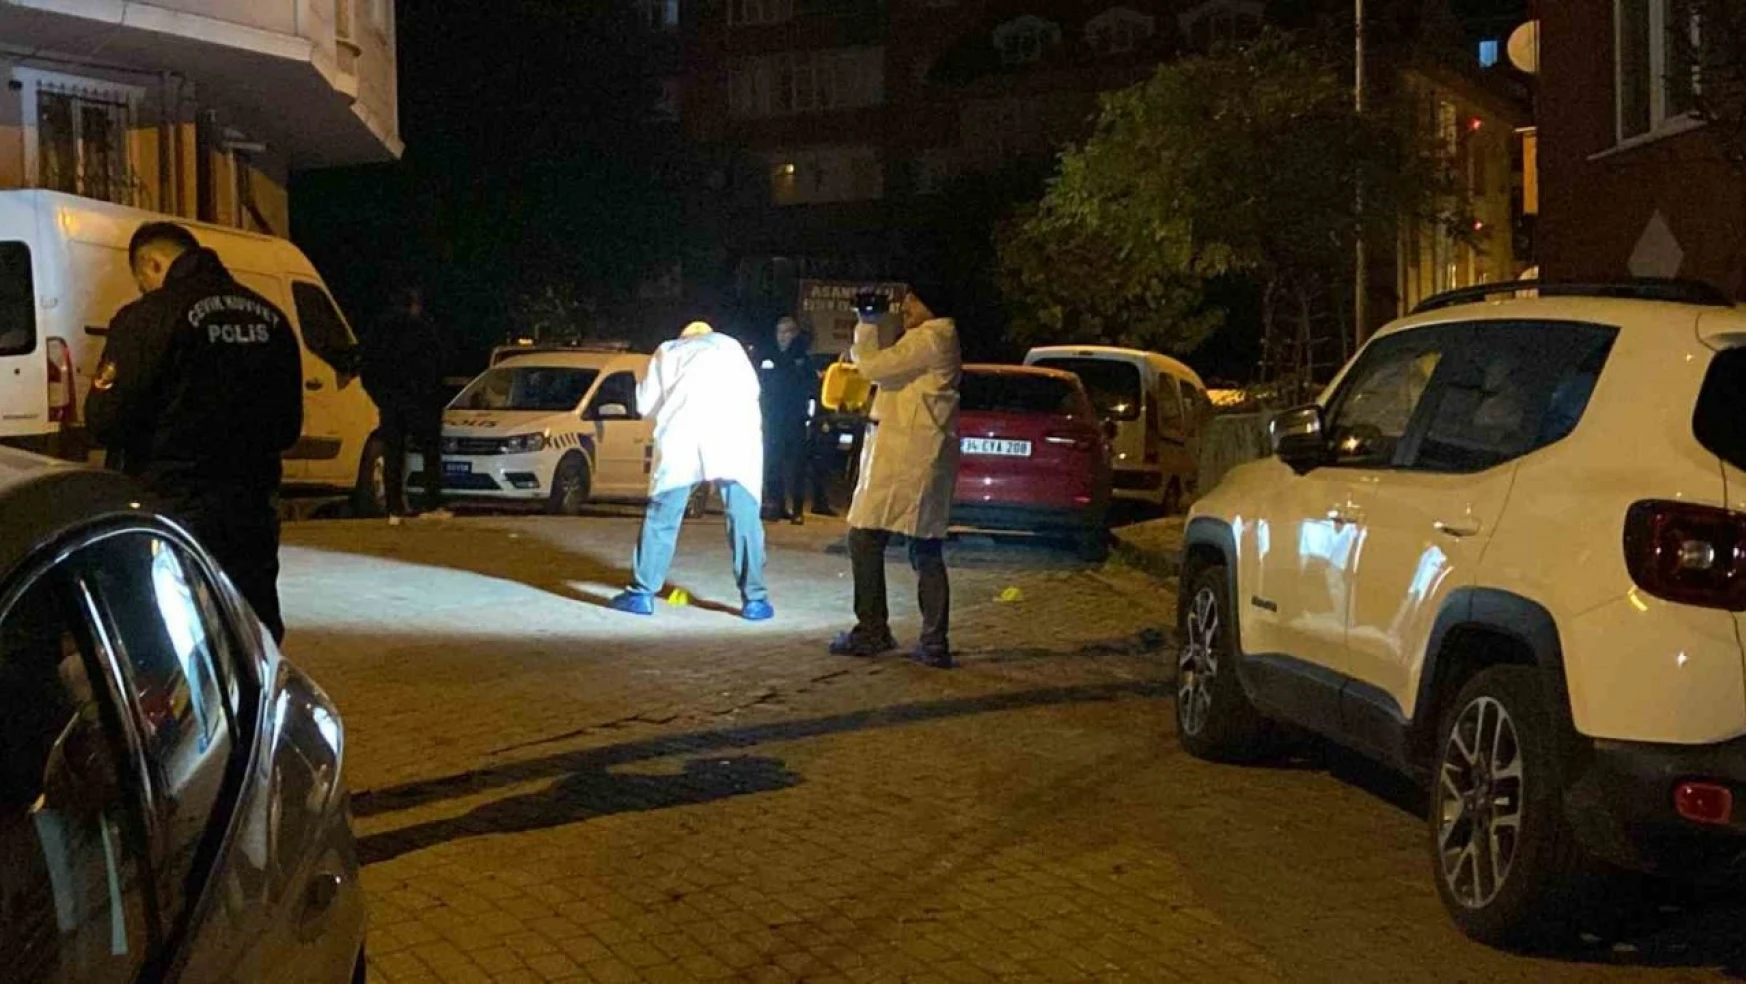 Güngören'de sokak ortasında silahlı çatışma: 1 ölü, 3 yaralı